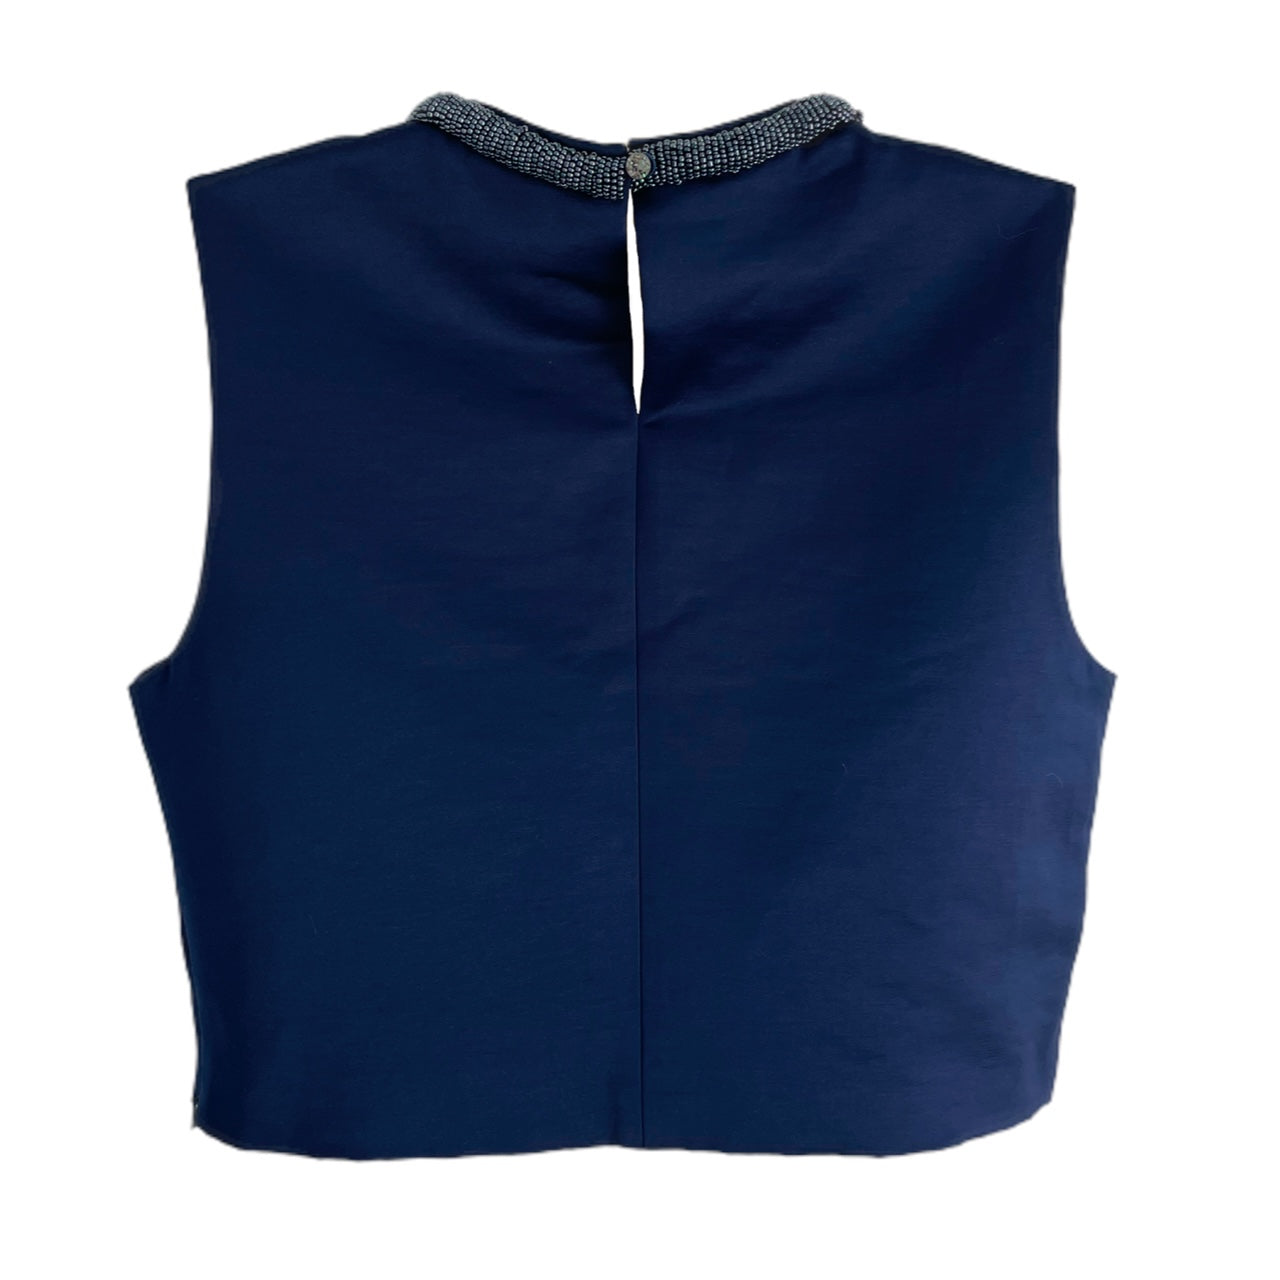 Blusa sin mangas azul marino adornada de Ted Baker